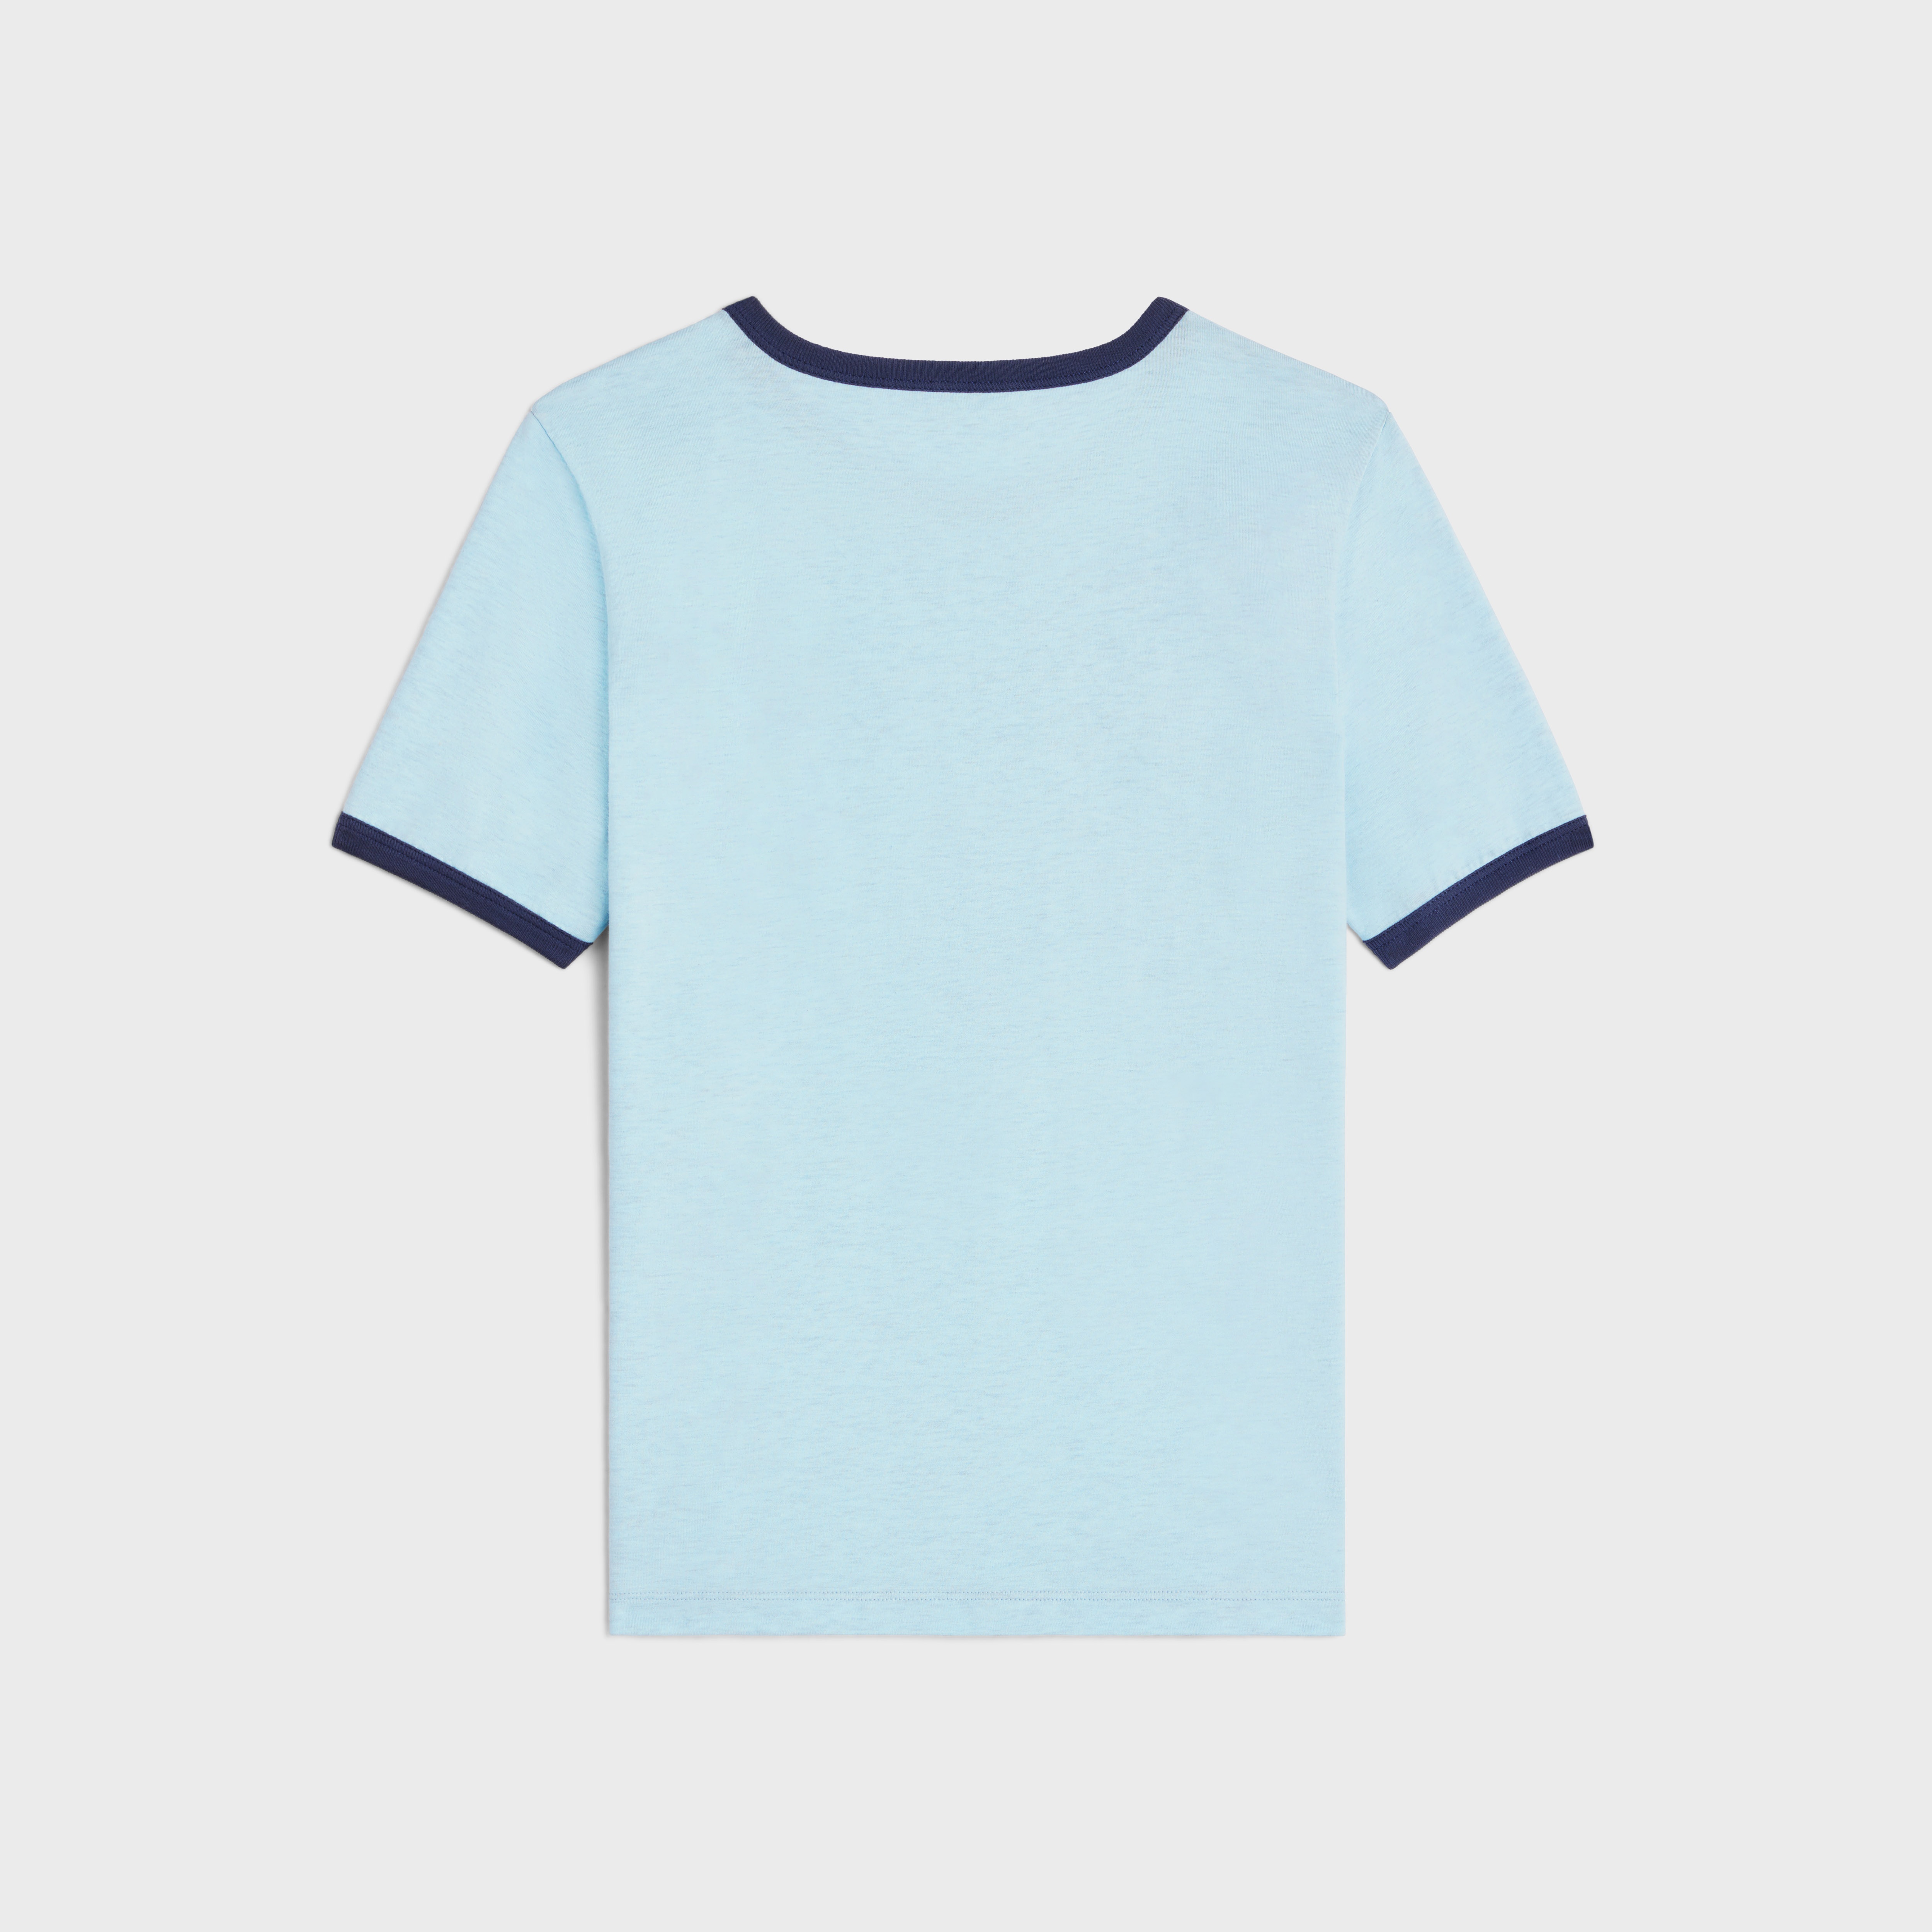 celine paris 70’s T-shirt in cotton jersey - 2